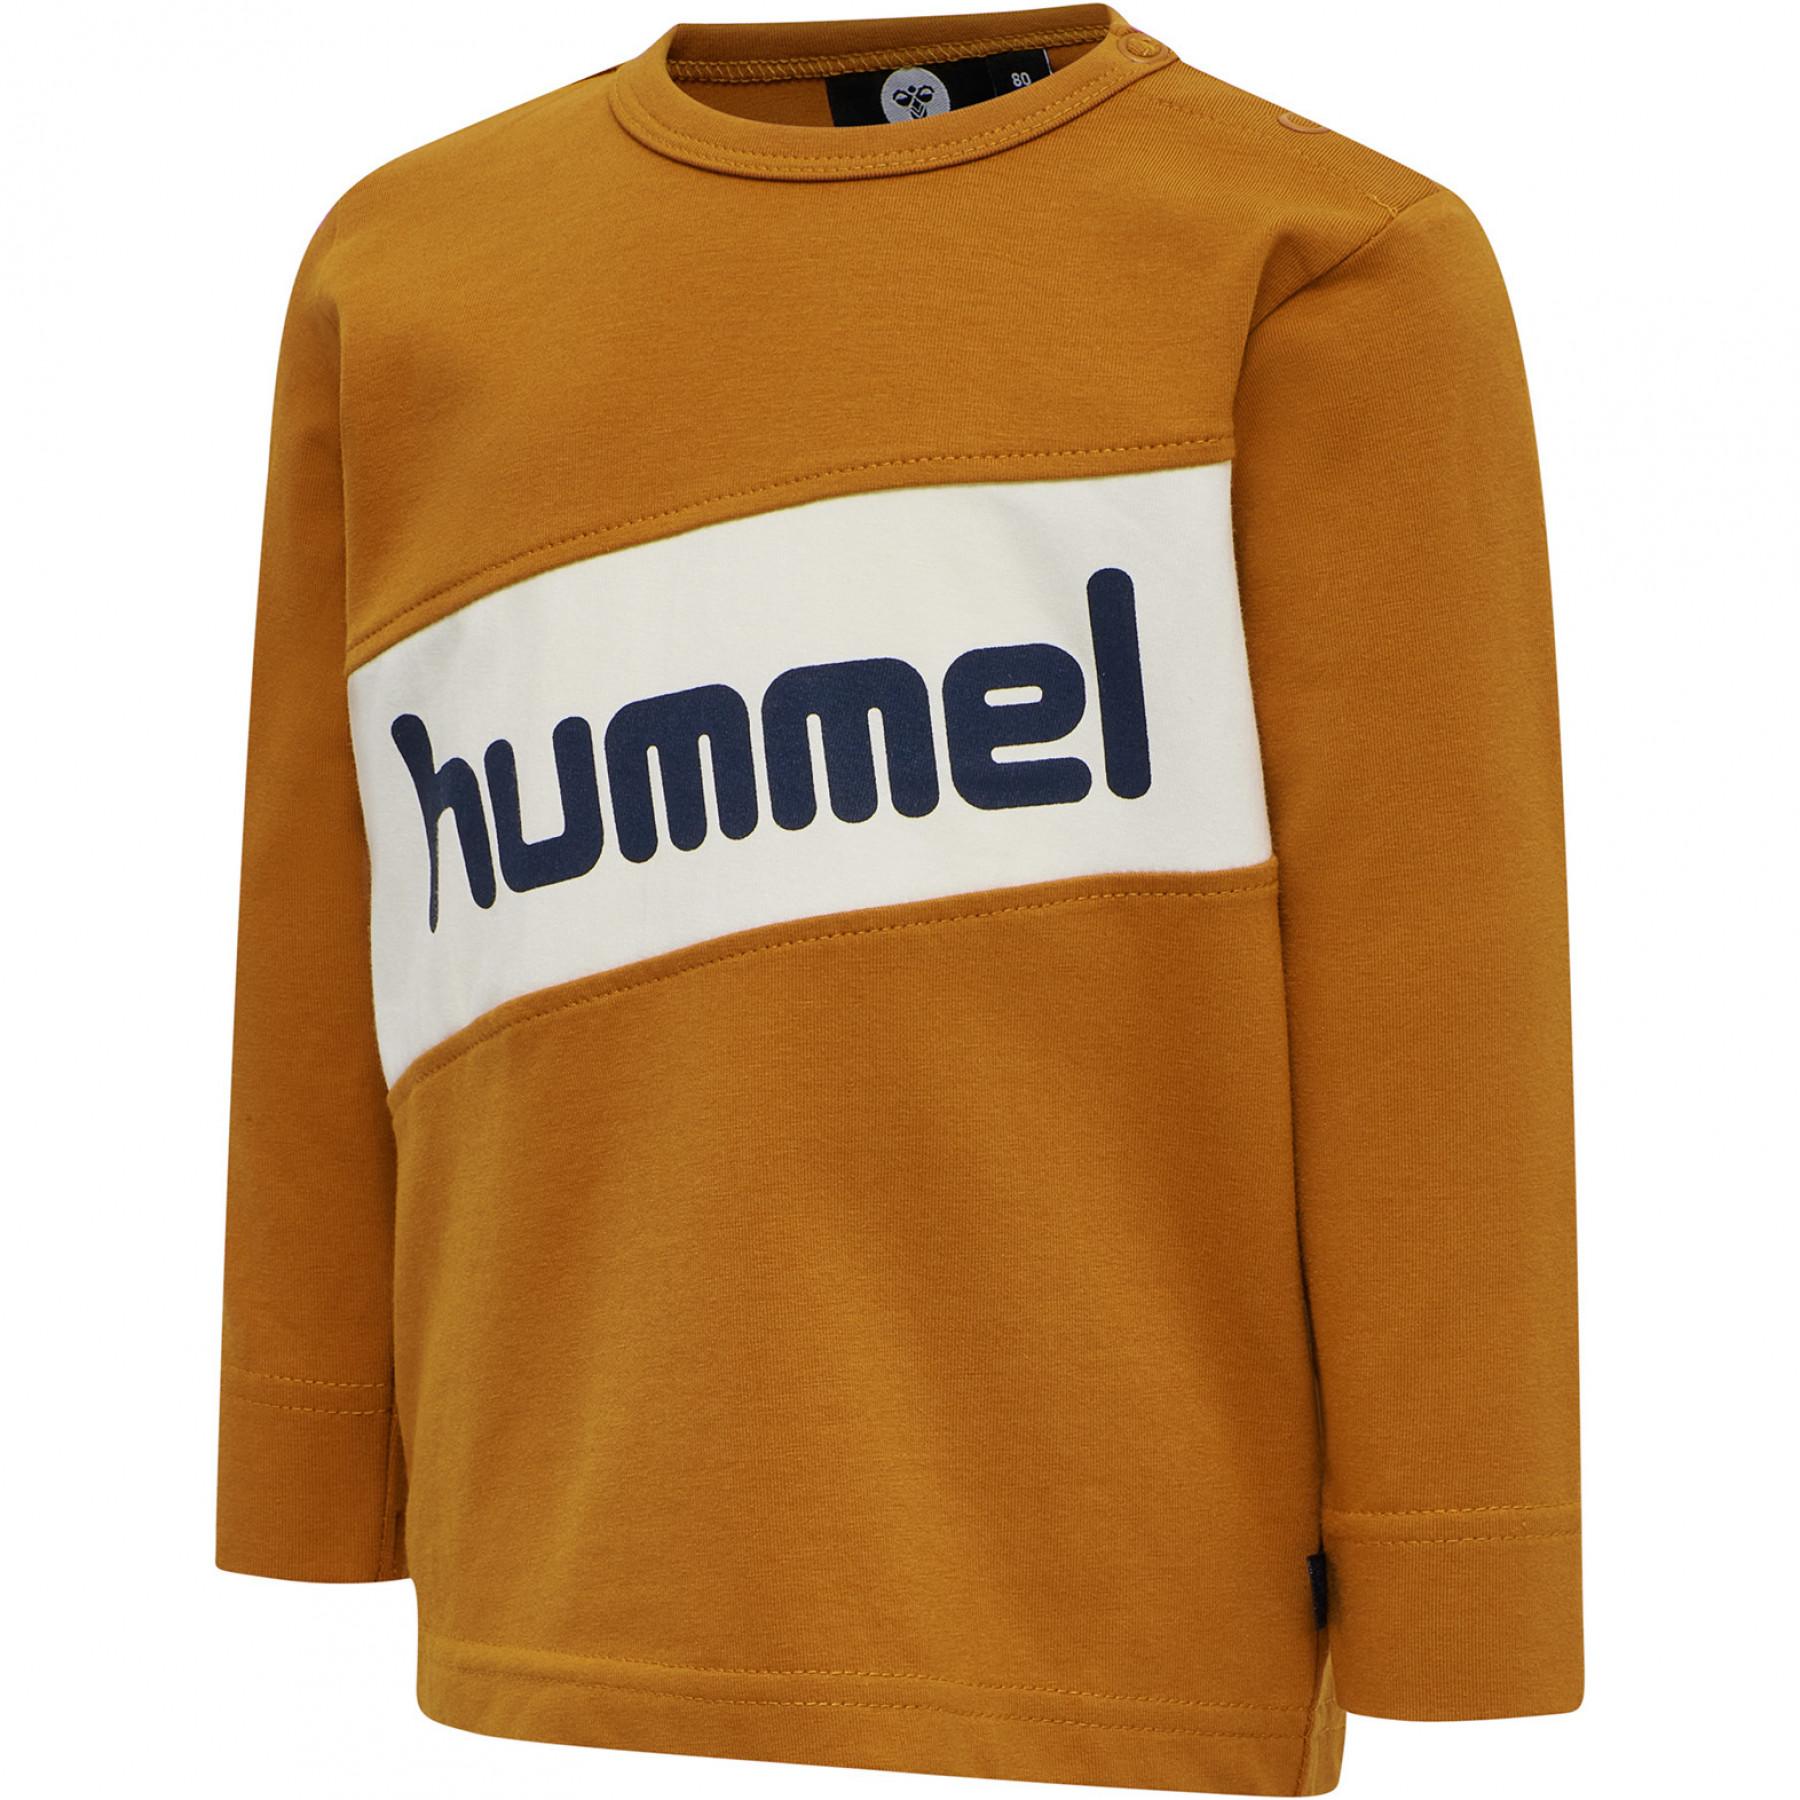 T-shirt long sleeves child Hummel hmlclement